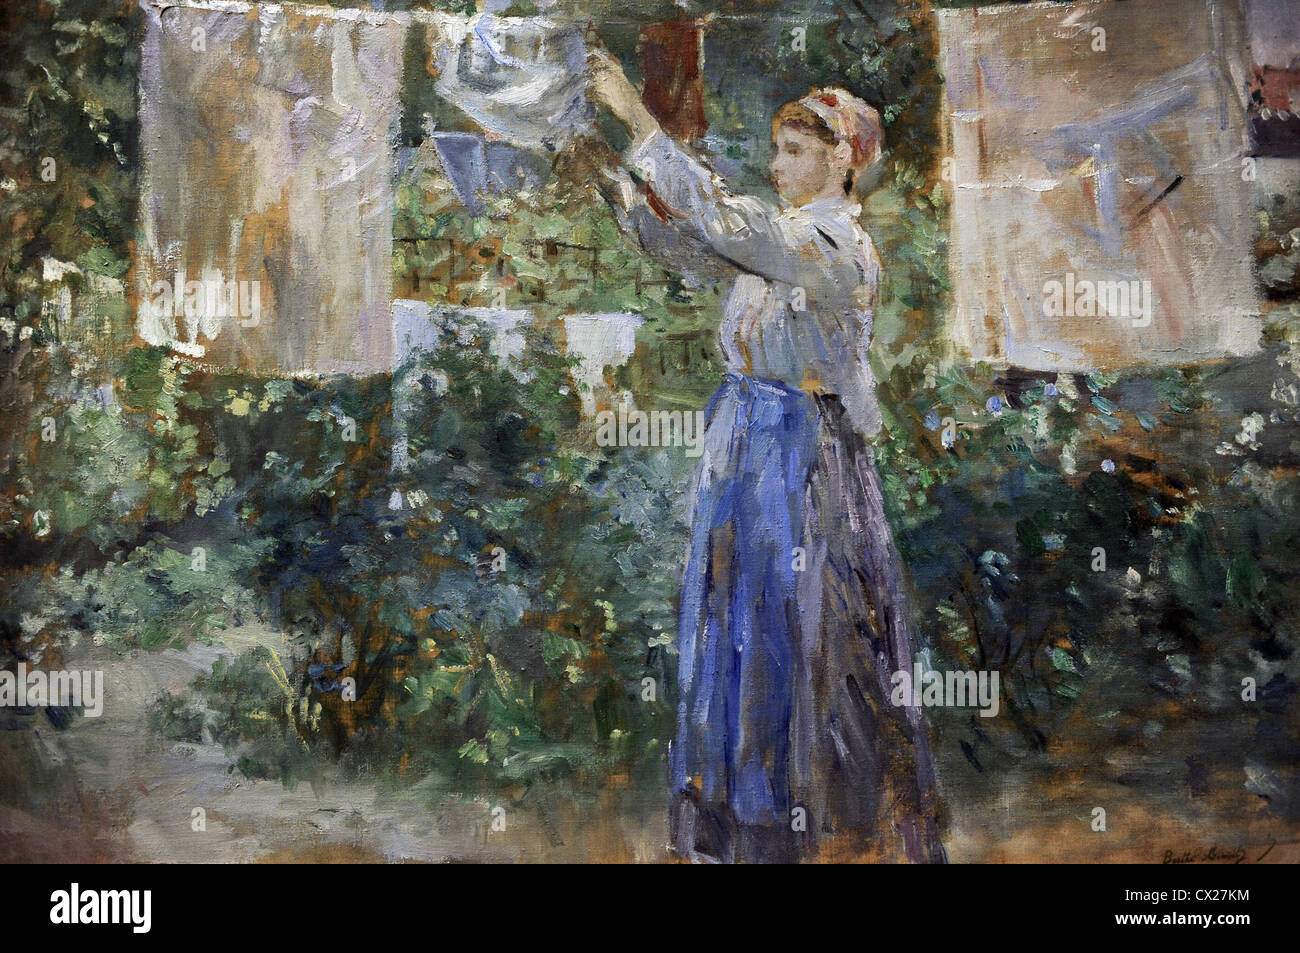 Berthe Morisot (1841-1895). Le peintre français. L'impressionnisme. Fille de paysan d'étendage à sec (1881). Carlsberg Glyptotek. Banque D'Images